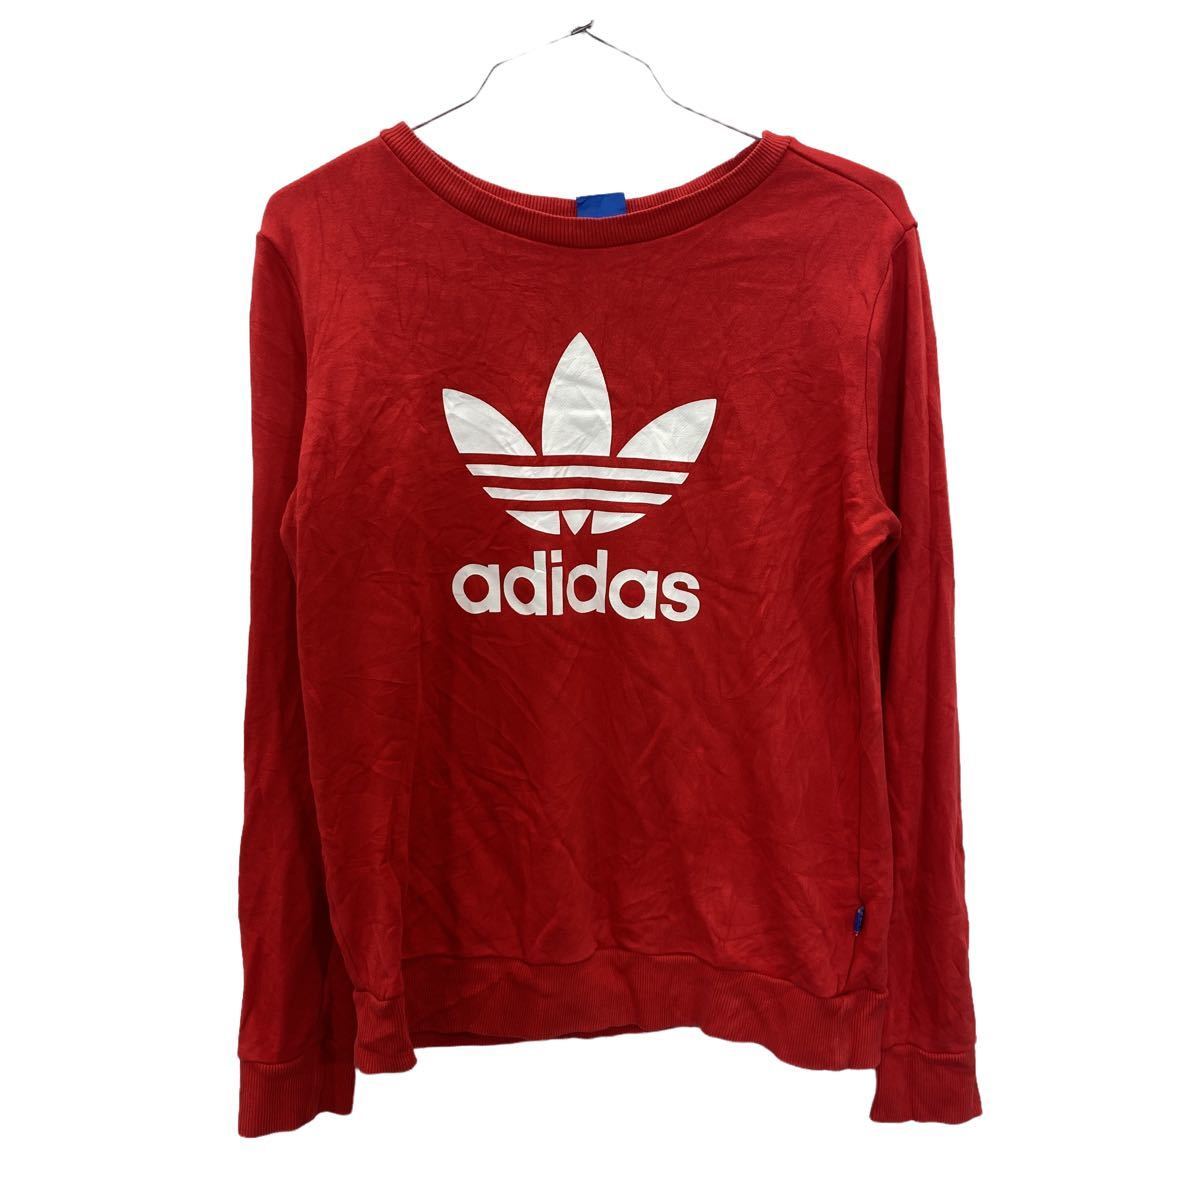 adidas тренировочный футболка женский L размер степень Adidas Logo тренировочный to зеркальный . il красный б/у одежда . America скупка t2208-3391